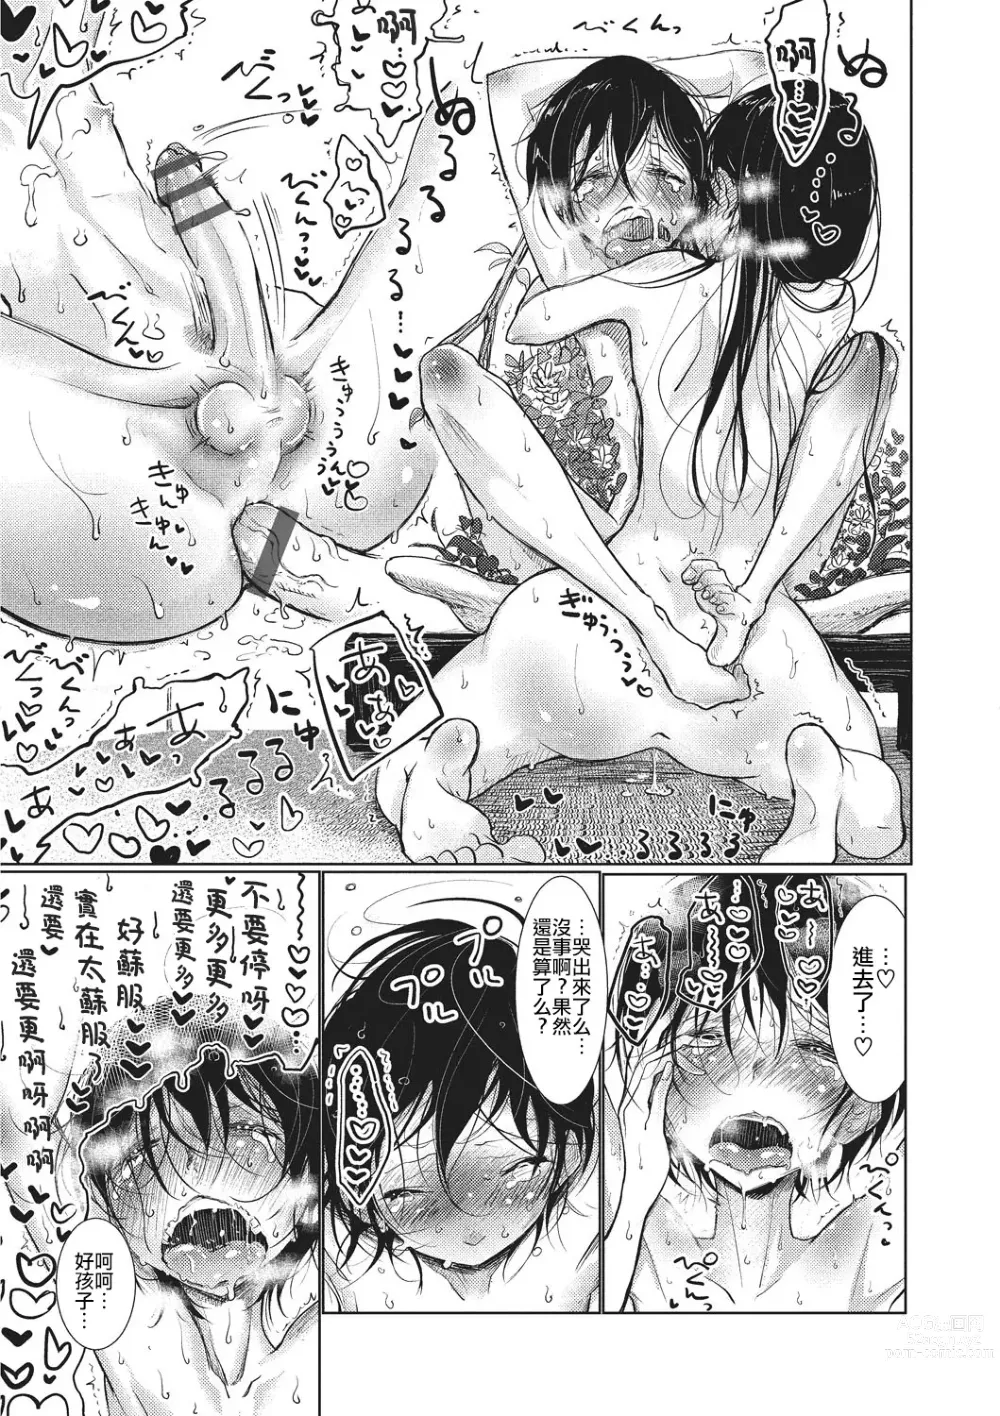 Page 195 of manga Bokura wa...